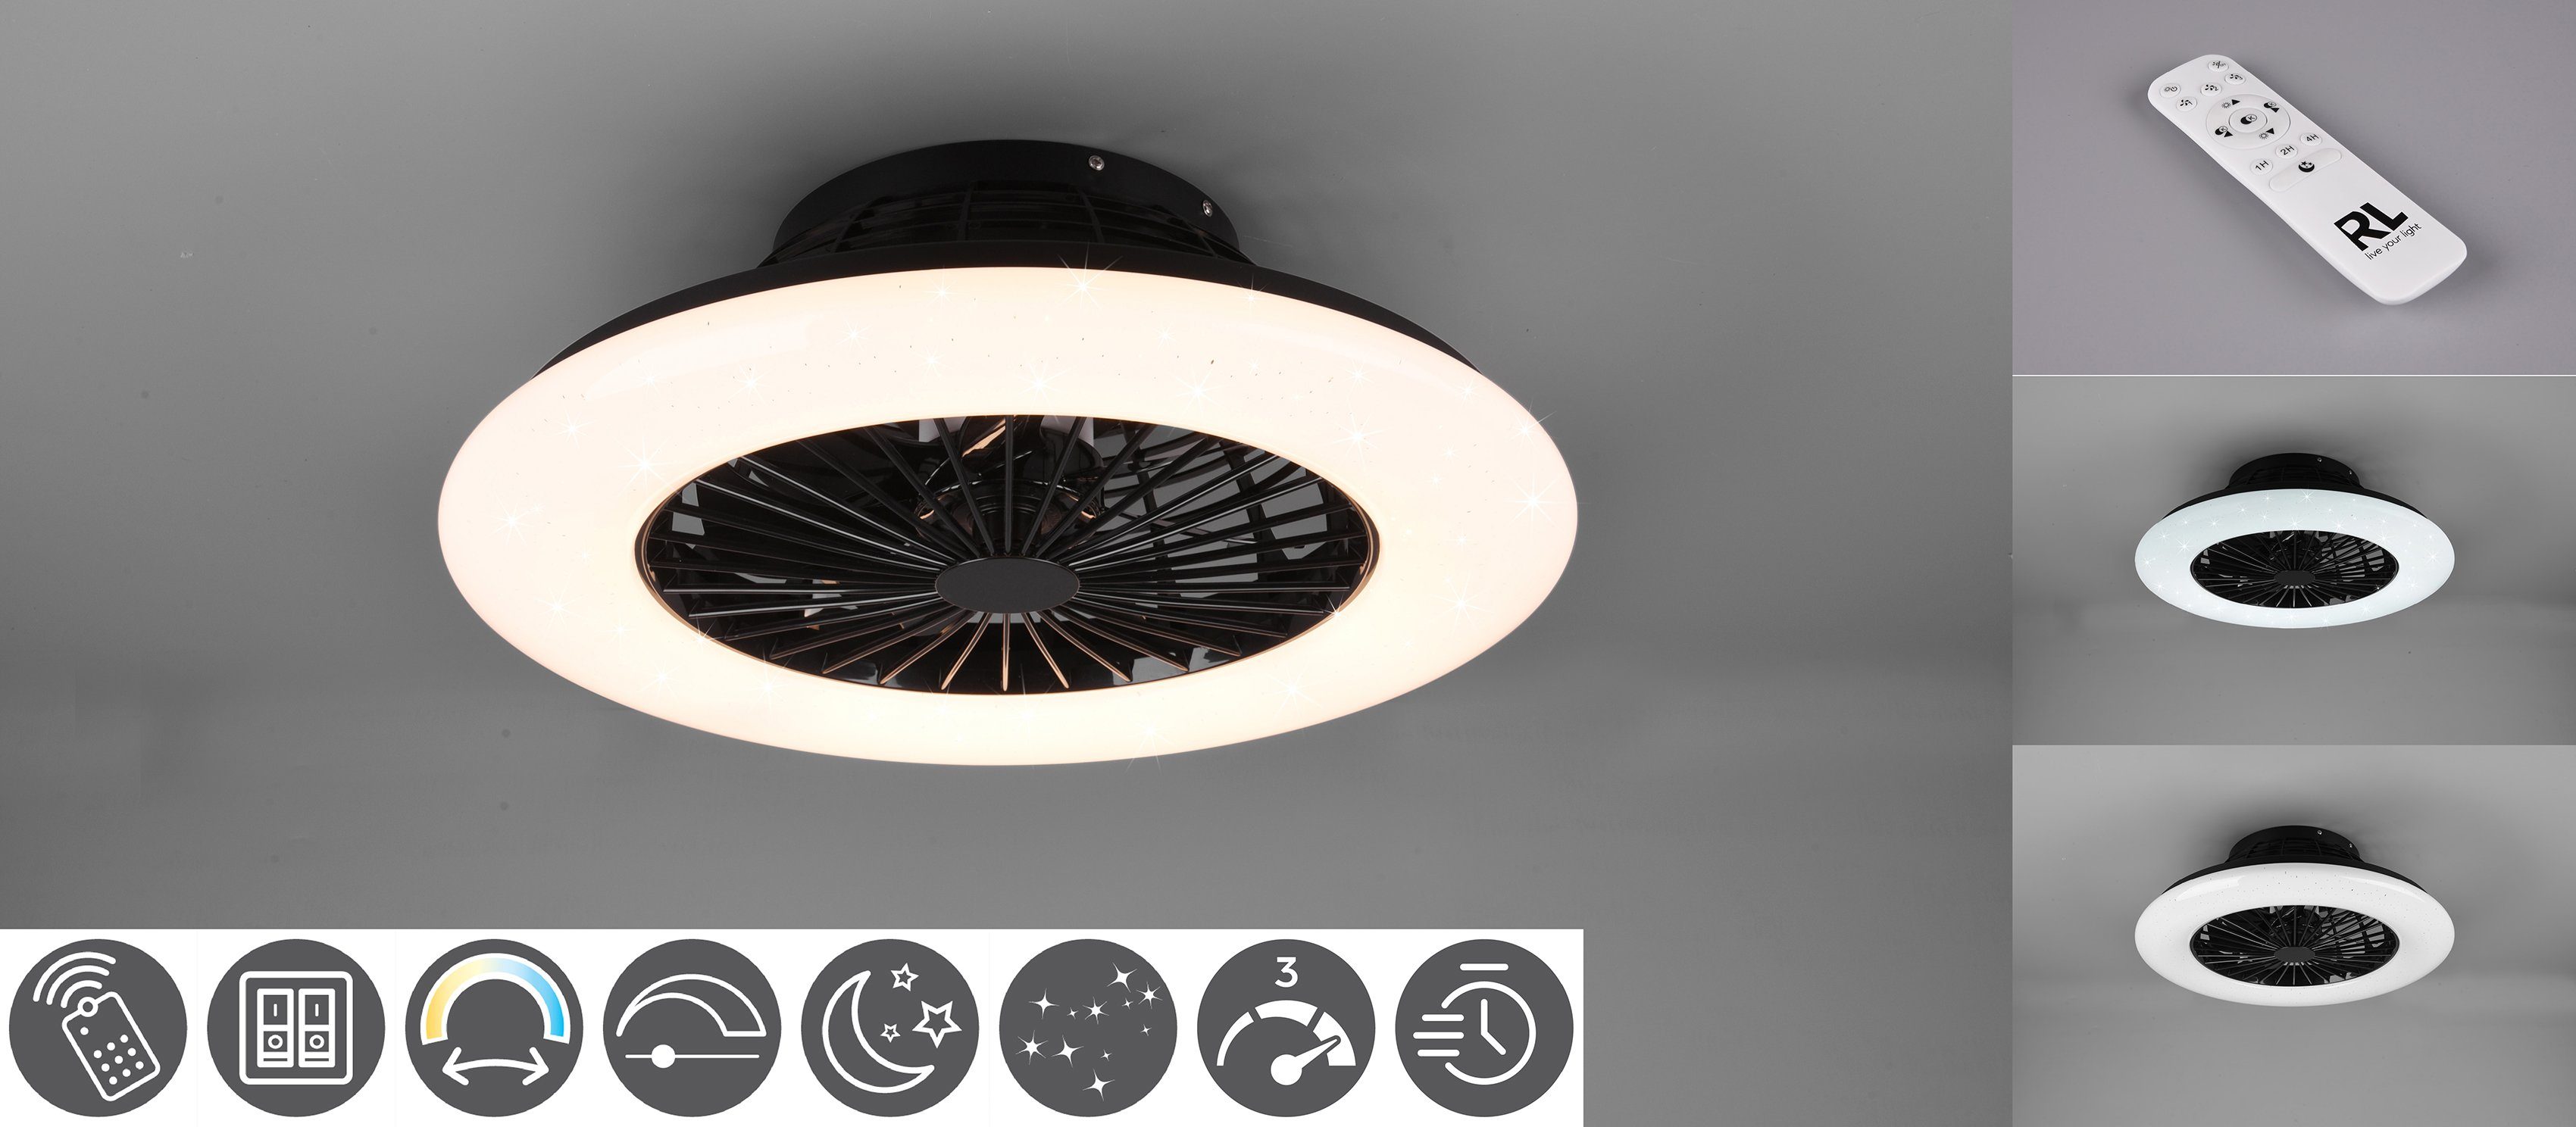 TRIO Leuchten LED Deckenleuchte getrennt Fernbedienung., schaltbar LED Ventilator Leuchte/ Stralsund, schwarz Ventilator, matt Neutralweiß, Timerfunktion, fest integriert, Ventilatorfunktion, mit